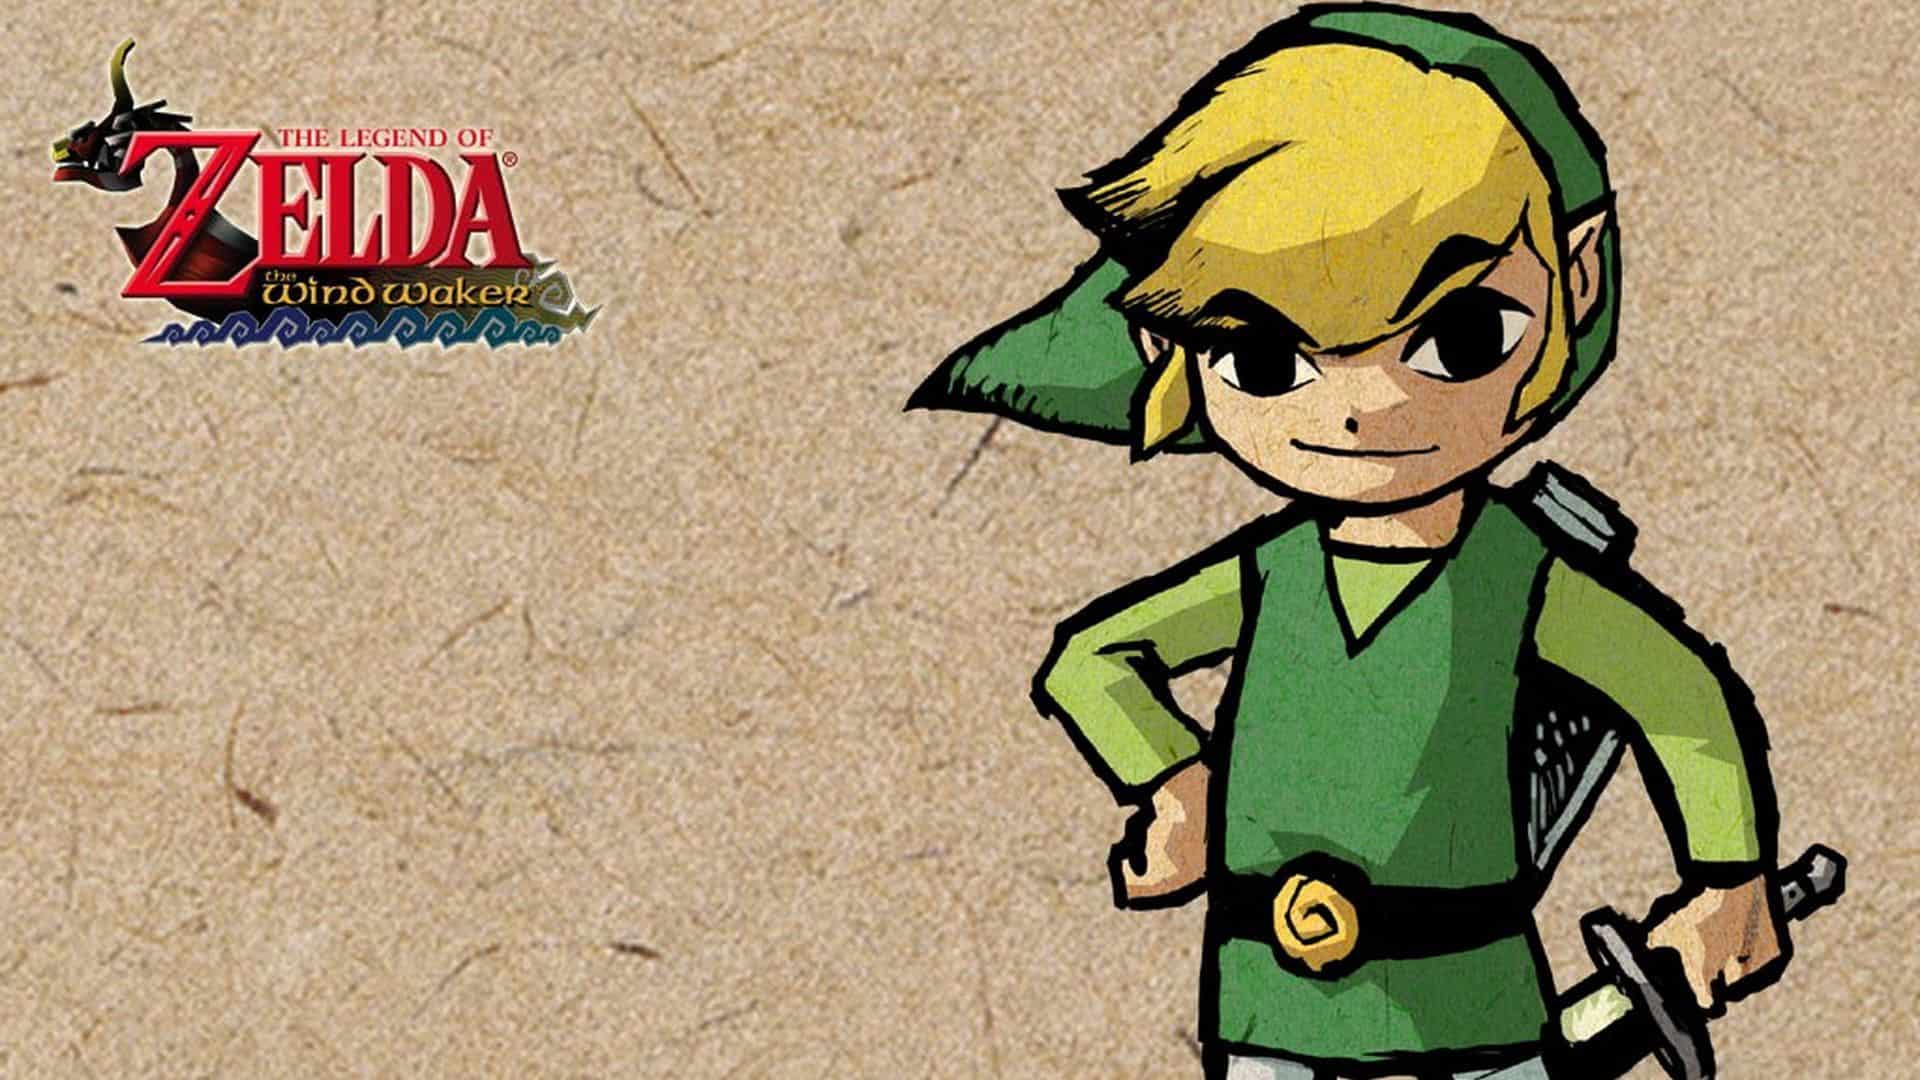 Best Zelda Games - The Legend of Zelda - The Wind Waker